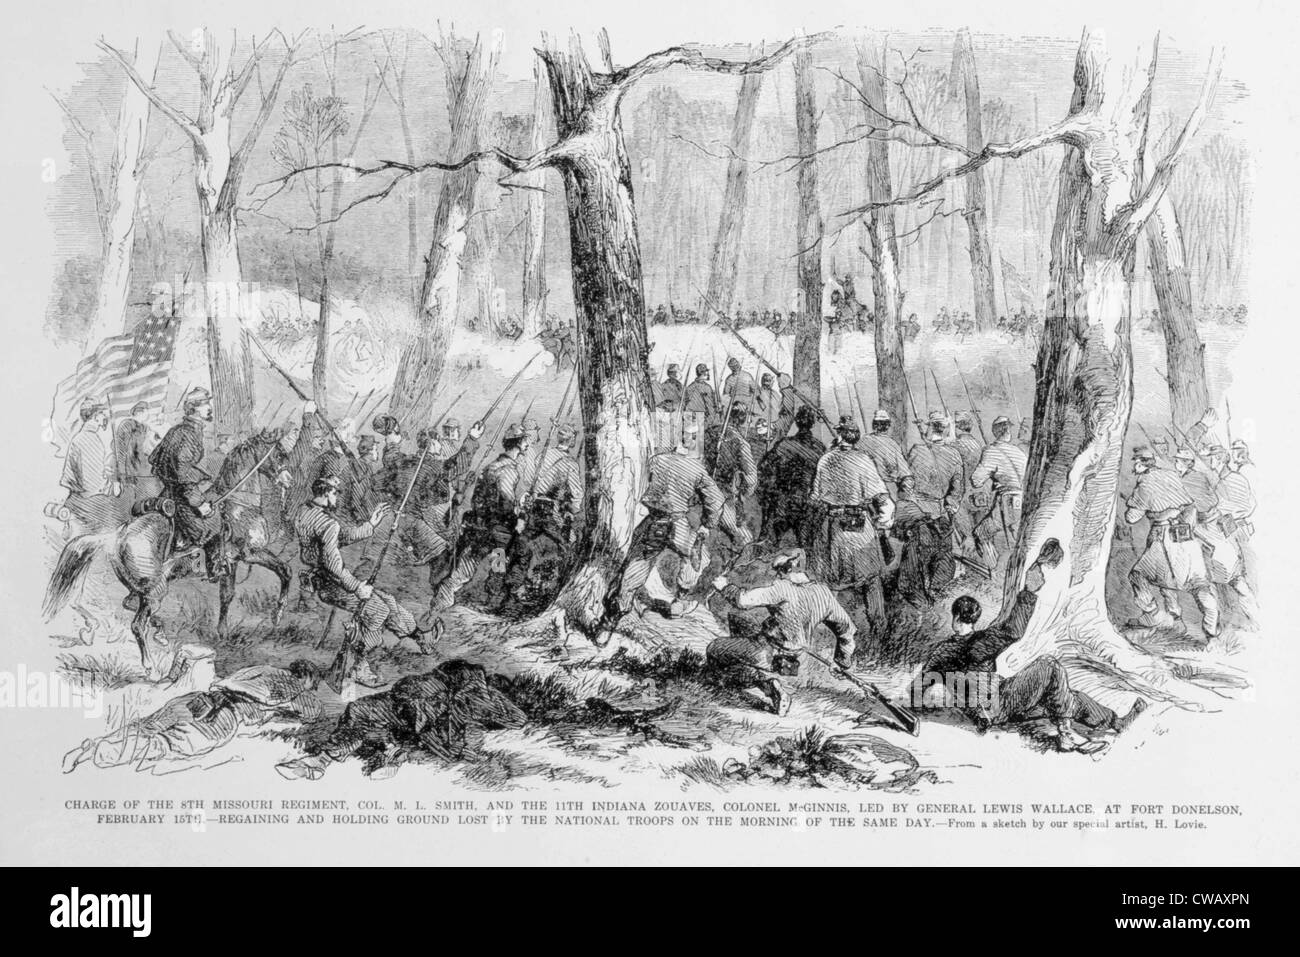 Carica del 9° Reggimento Missouri e undicesimo Indiana Zouaves a Fort Donelson, 15 Febbraio 1861 Foto Stock